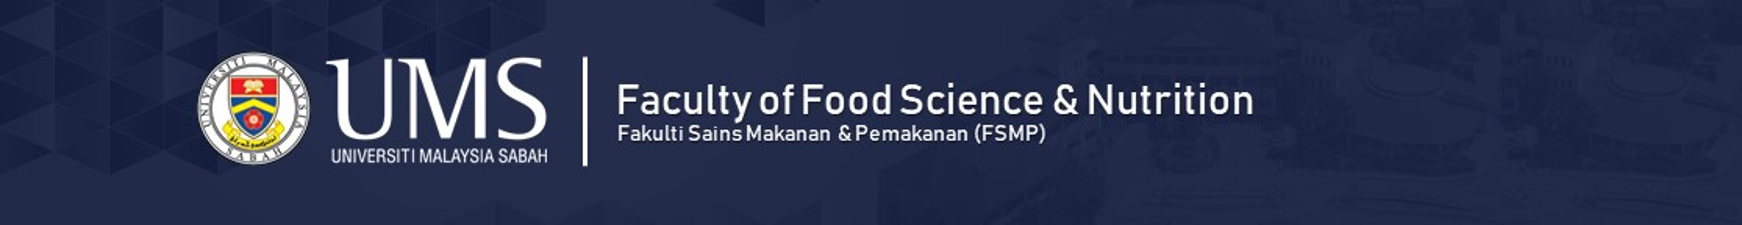 Fakulti Sains Makanan & Pemakanan